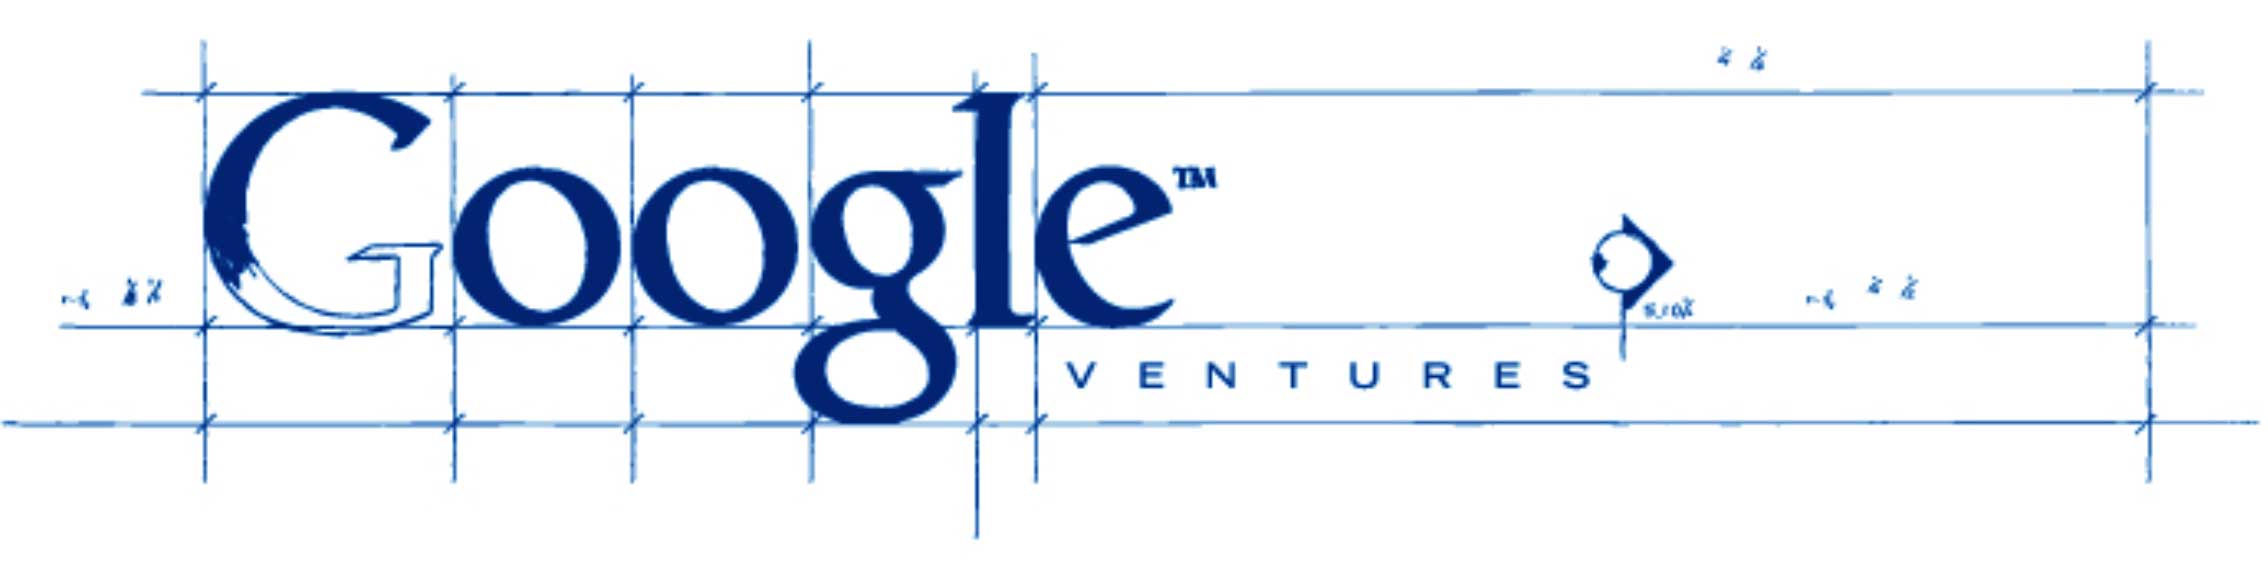 Original Google Homepage Logo - GV